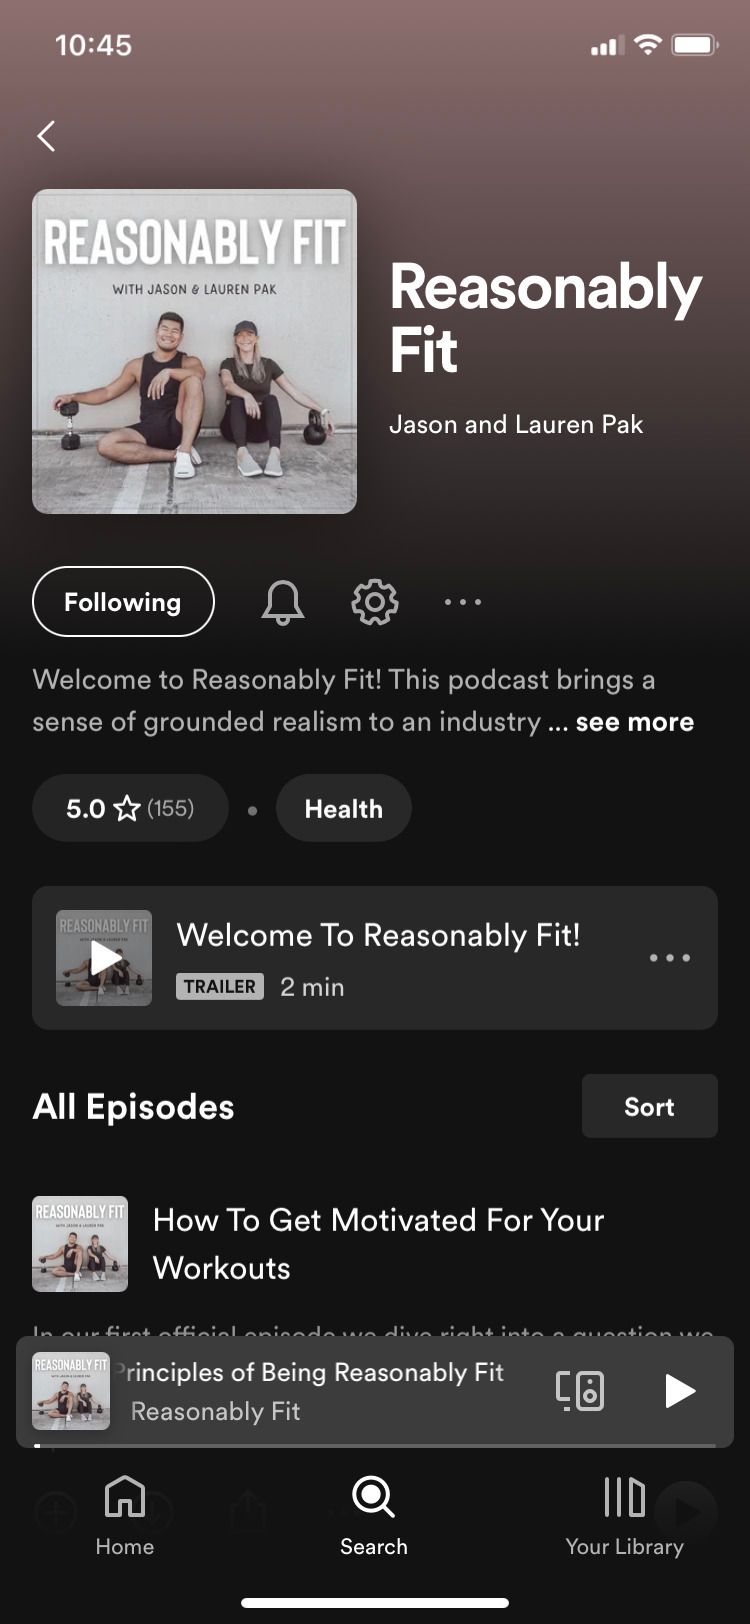 Reasonably Fit Podcast main screen